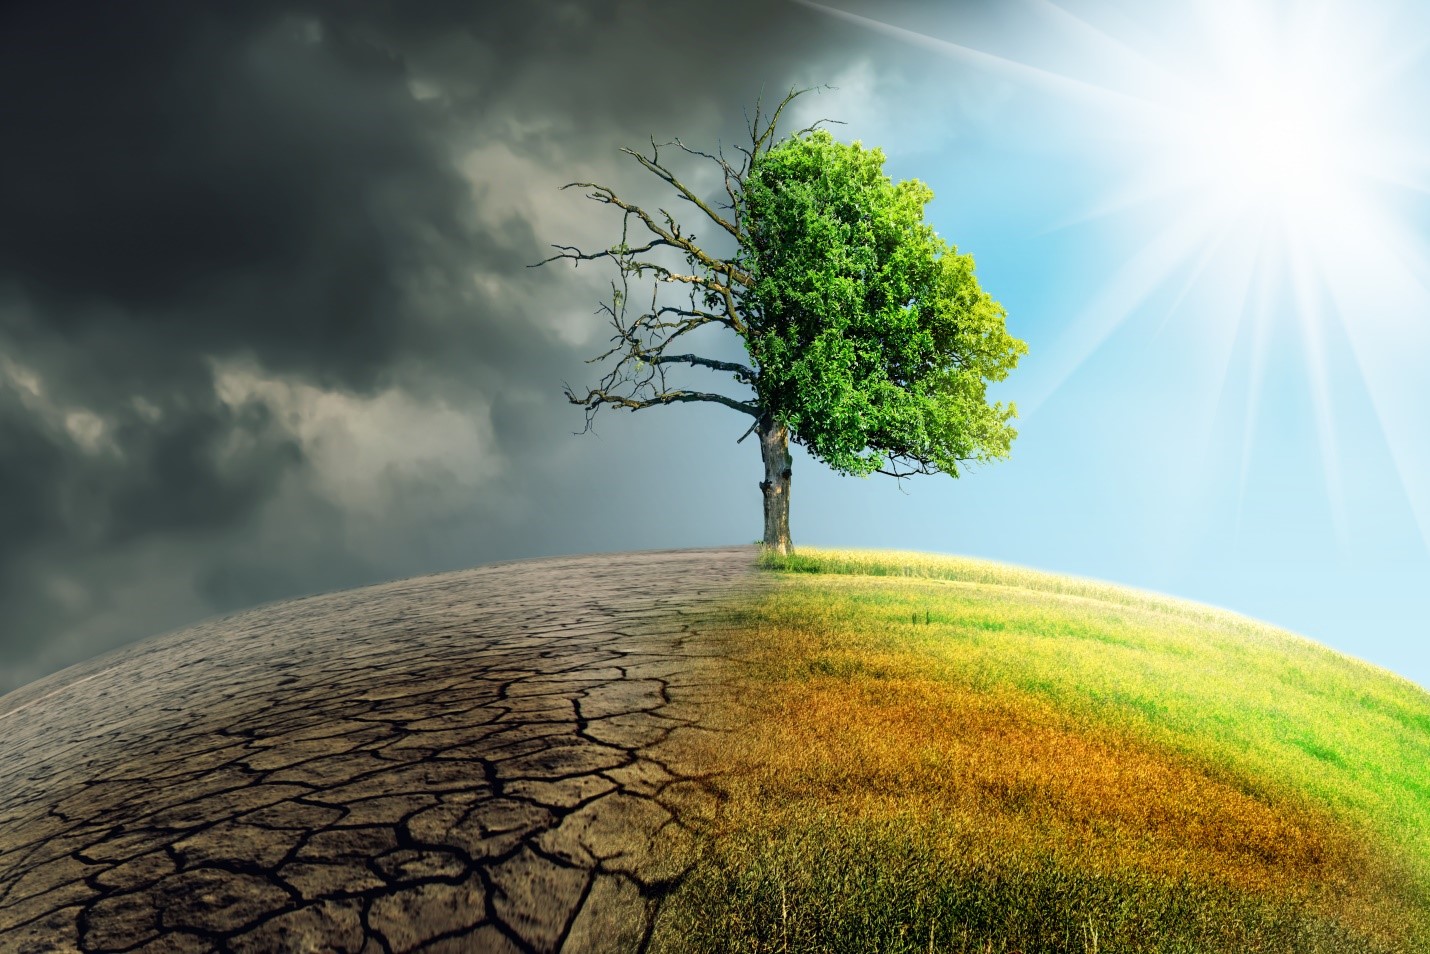 Imagen ilustrativa del cambio climático. Fuente: Shutterstock